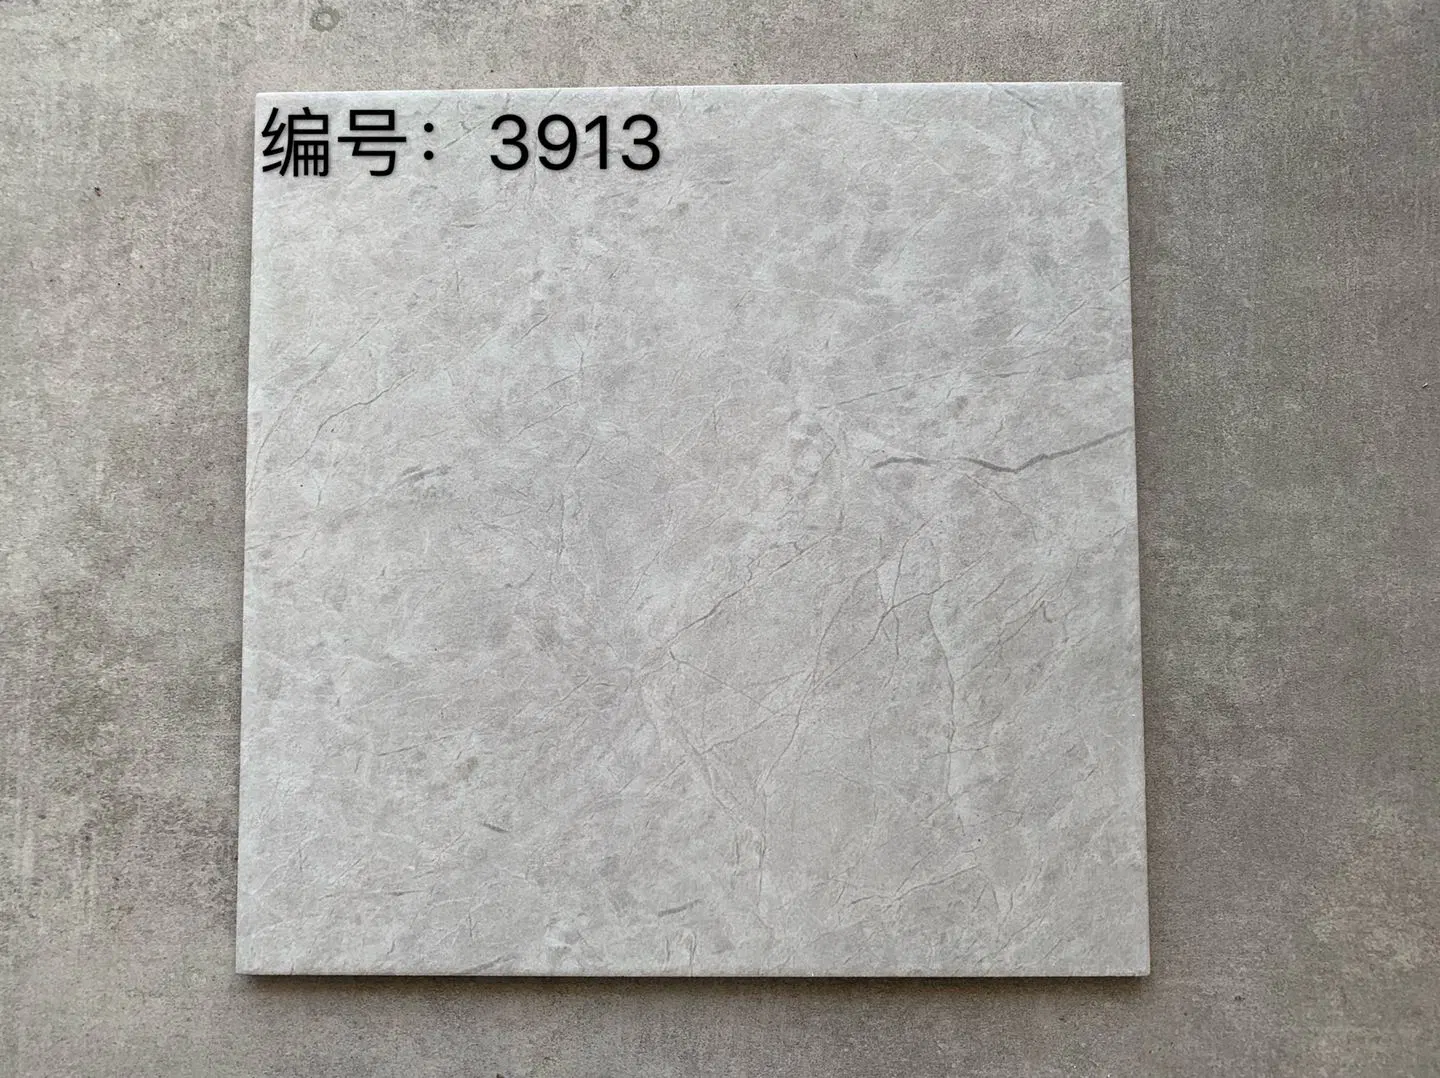 2022 новый продукт высокого класса по завершении антикварным фарфором керамические стены пол кухня ванная комната Мэтт плитки